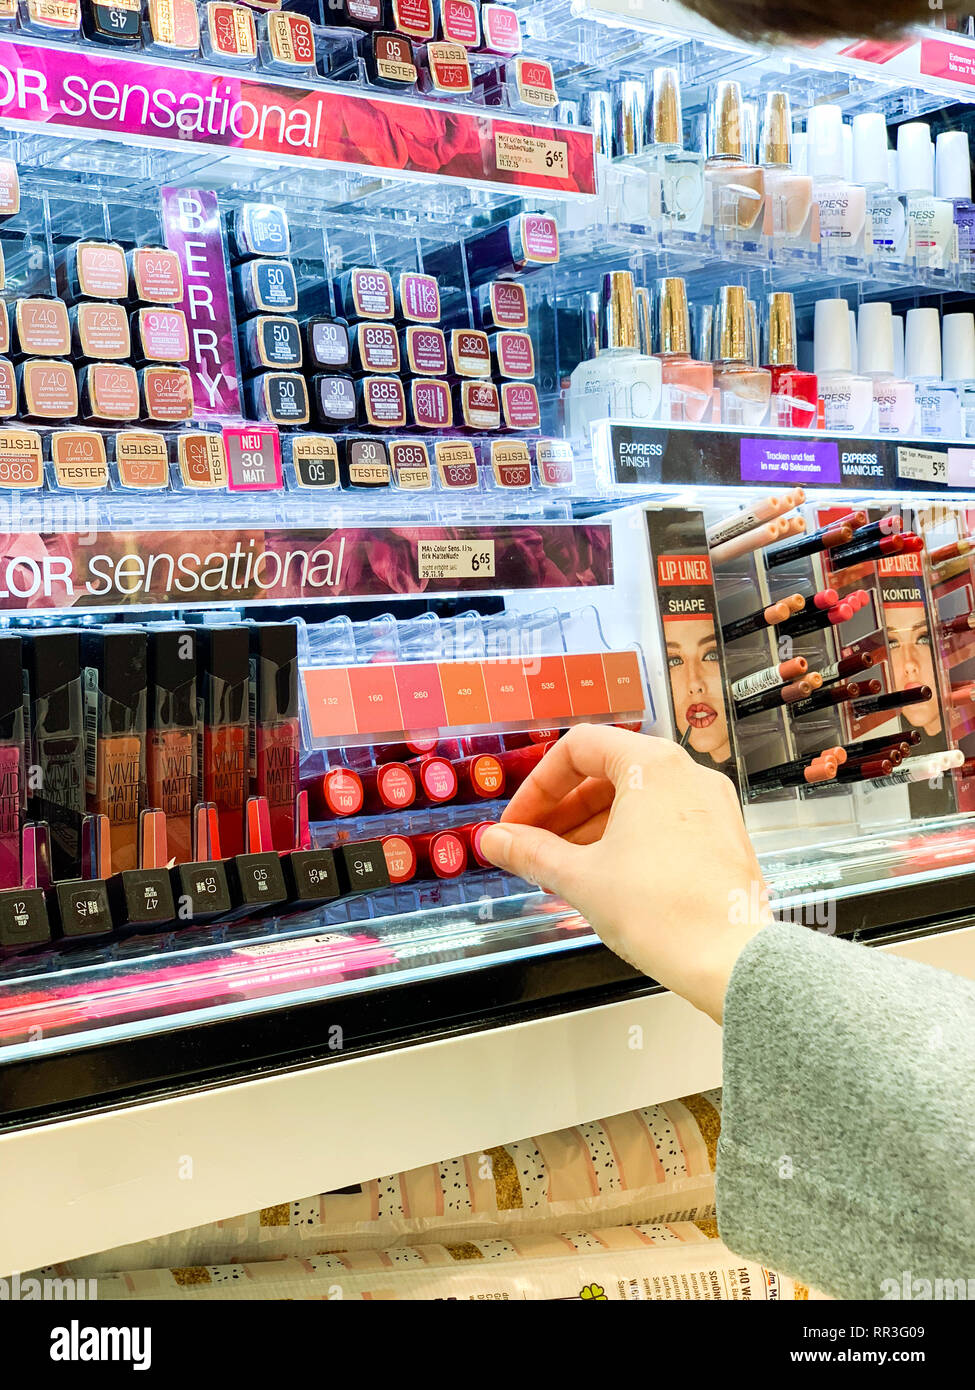 München, Deutschland - 27.Oktober 2018: die Frau in der Kosmetik kaufen Red store Lippenstift liner zeichenstift zwischen der Vielzahl Wahl von l'Oreal Marke Stockfoto